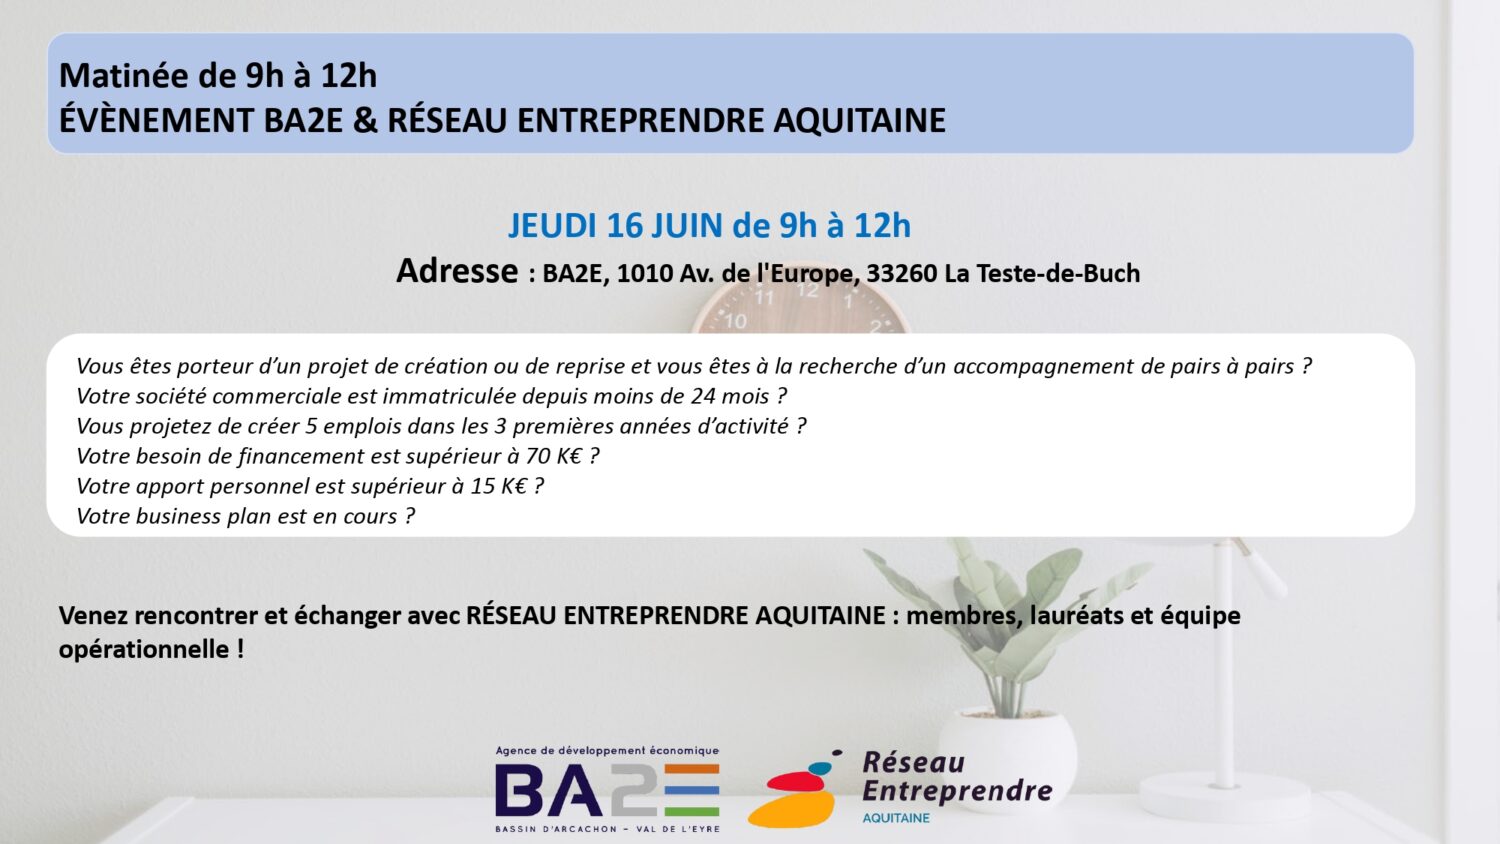 Venez rencontrer et échanger avec Réseau Entreprendre Aquitaine | Agenda économique